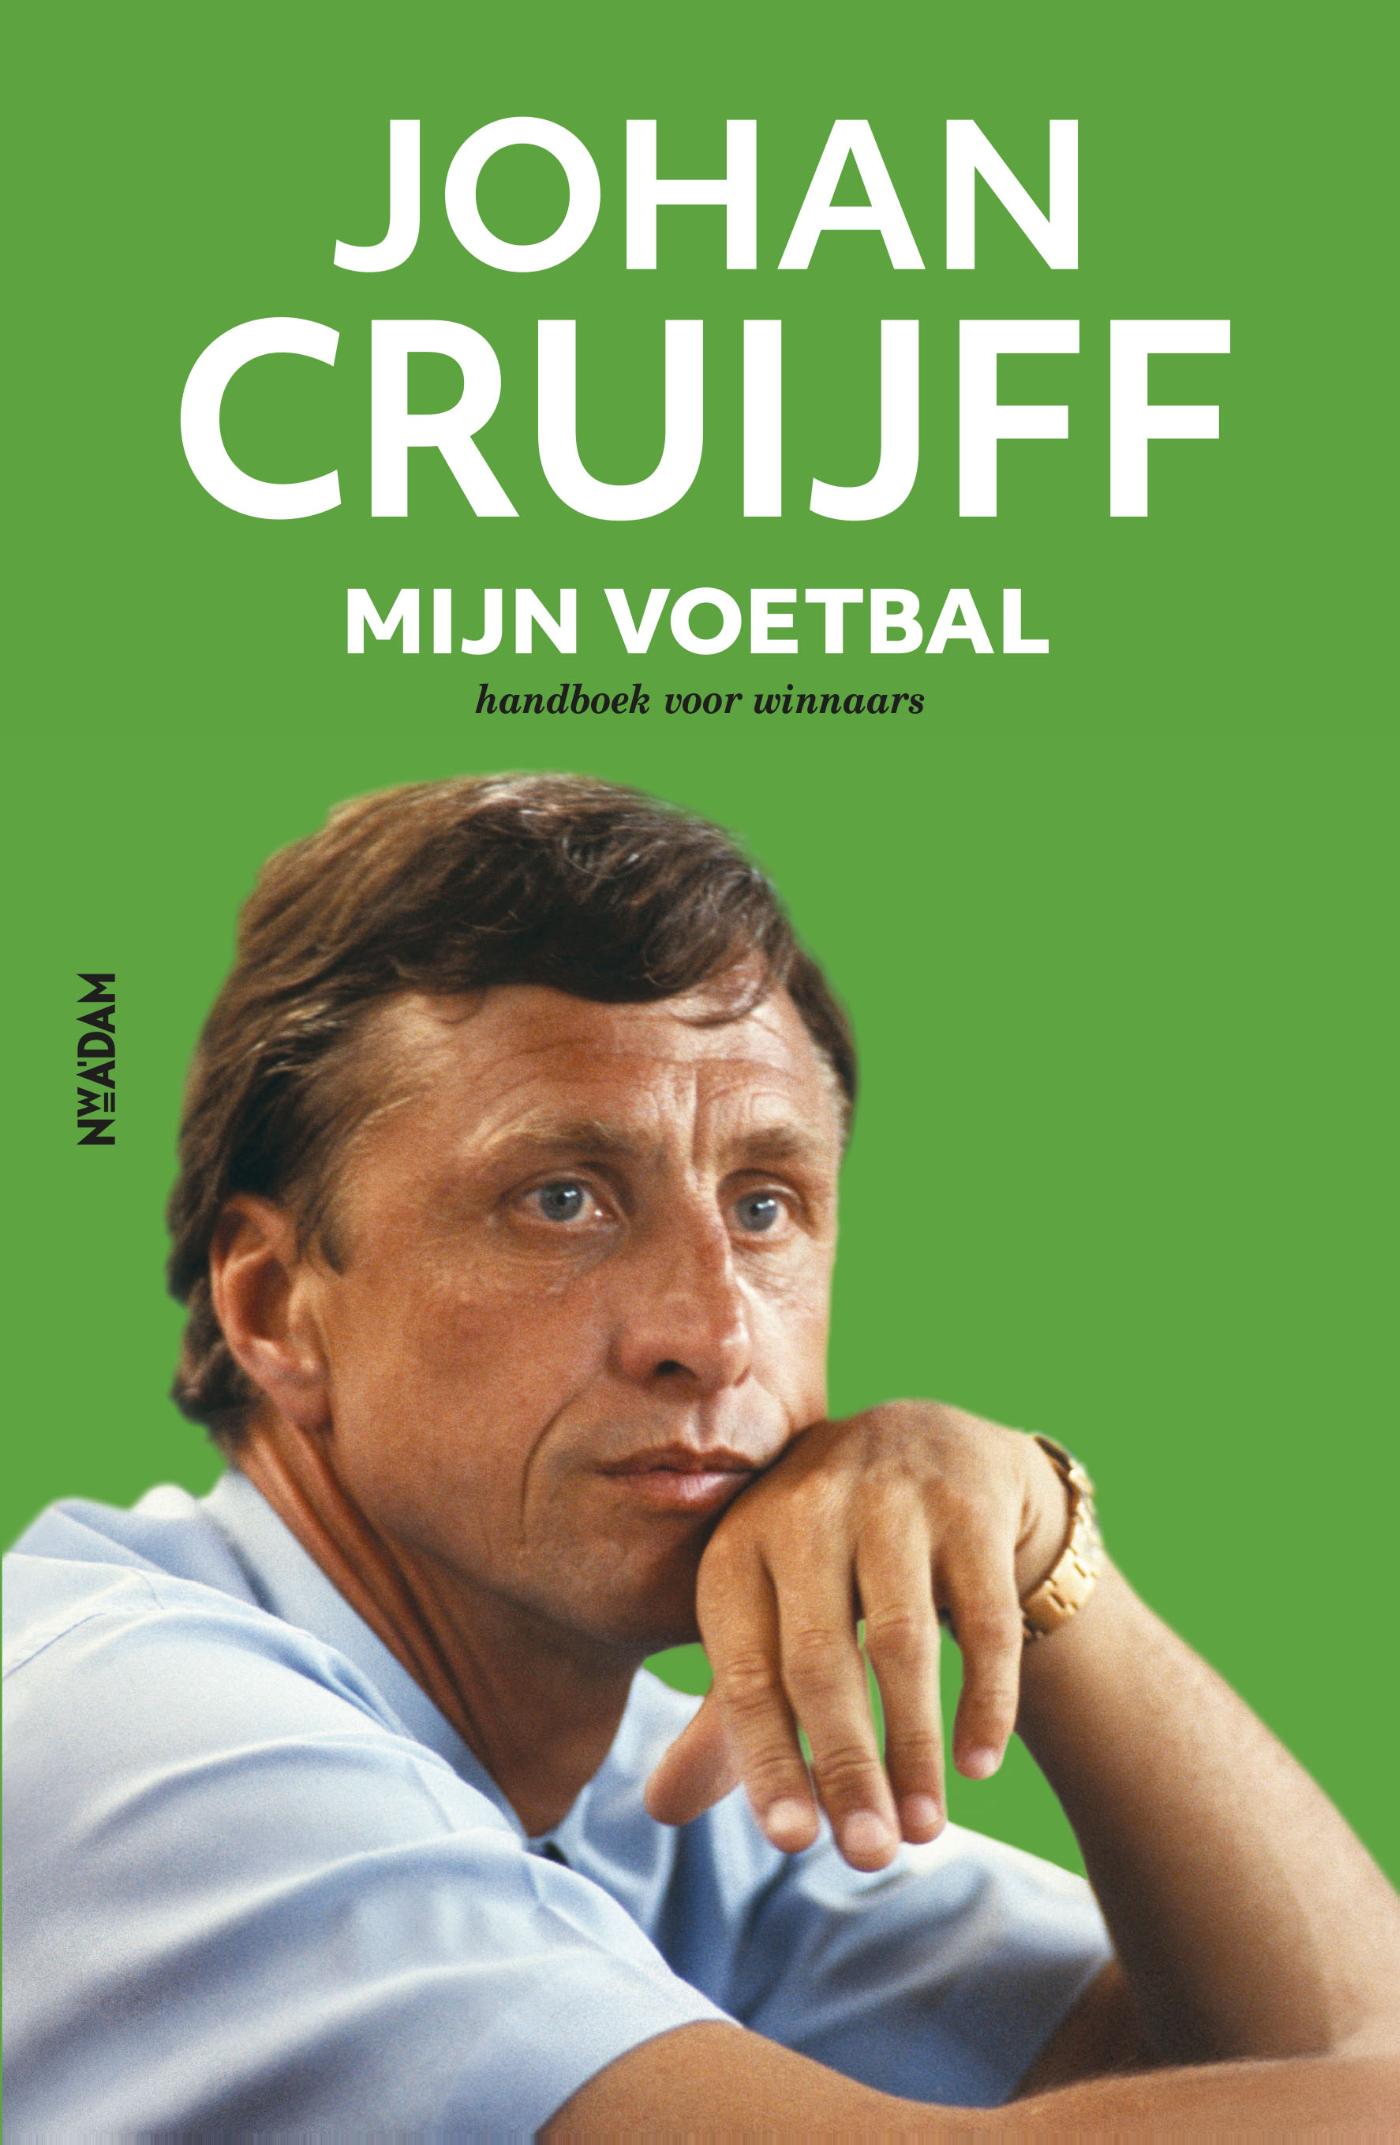 Johan Cruijff - Mijn voetbal (Ebook)